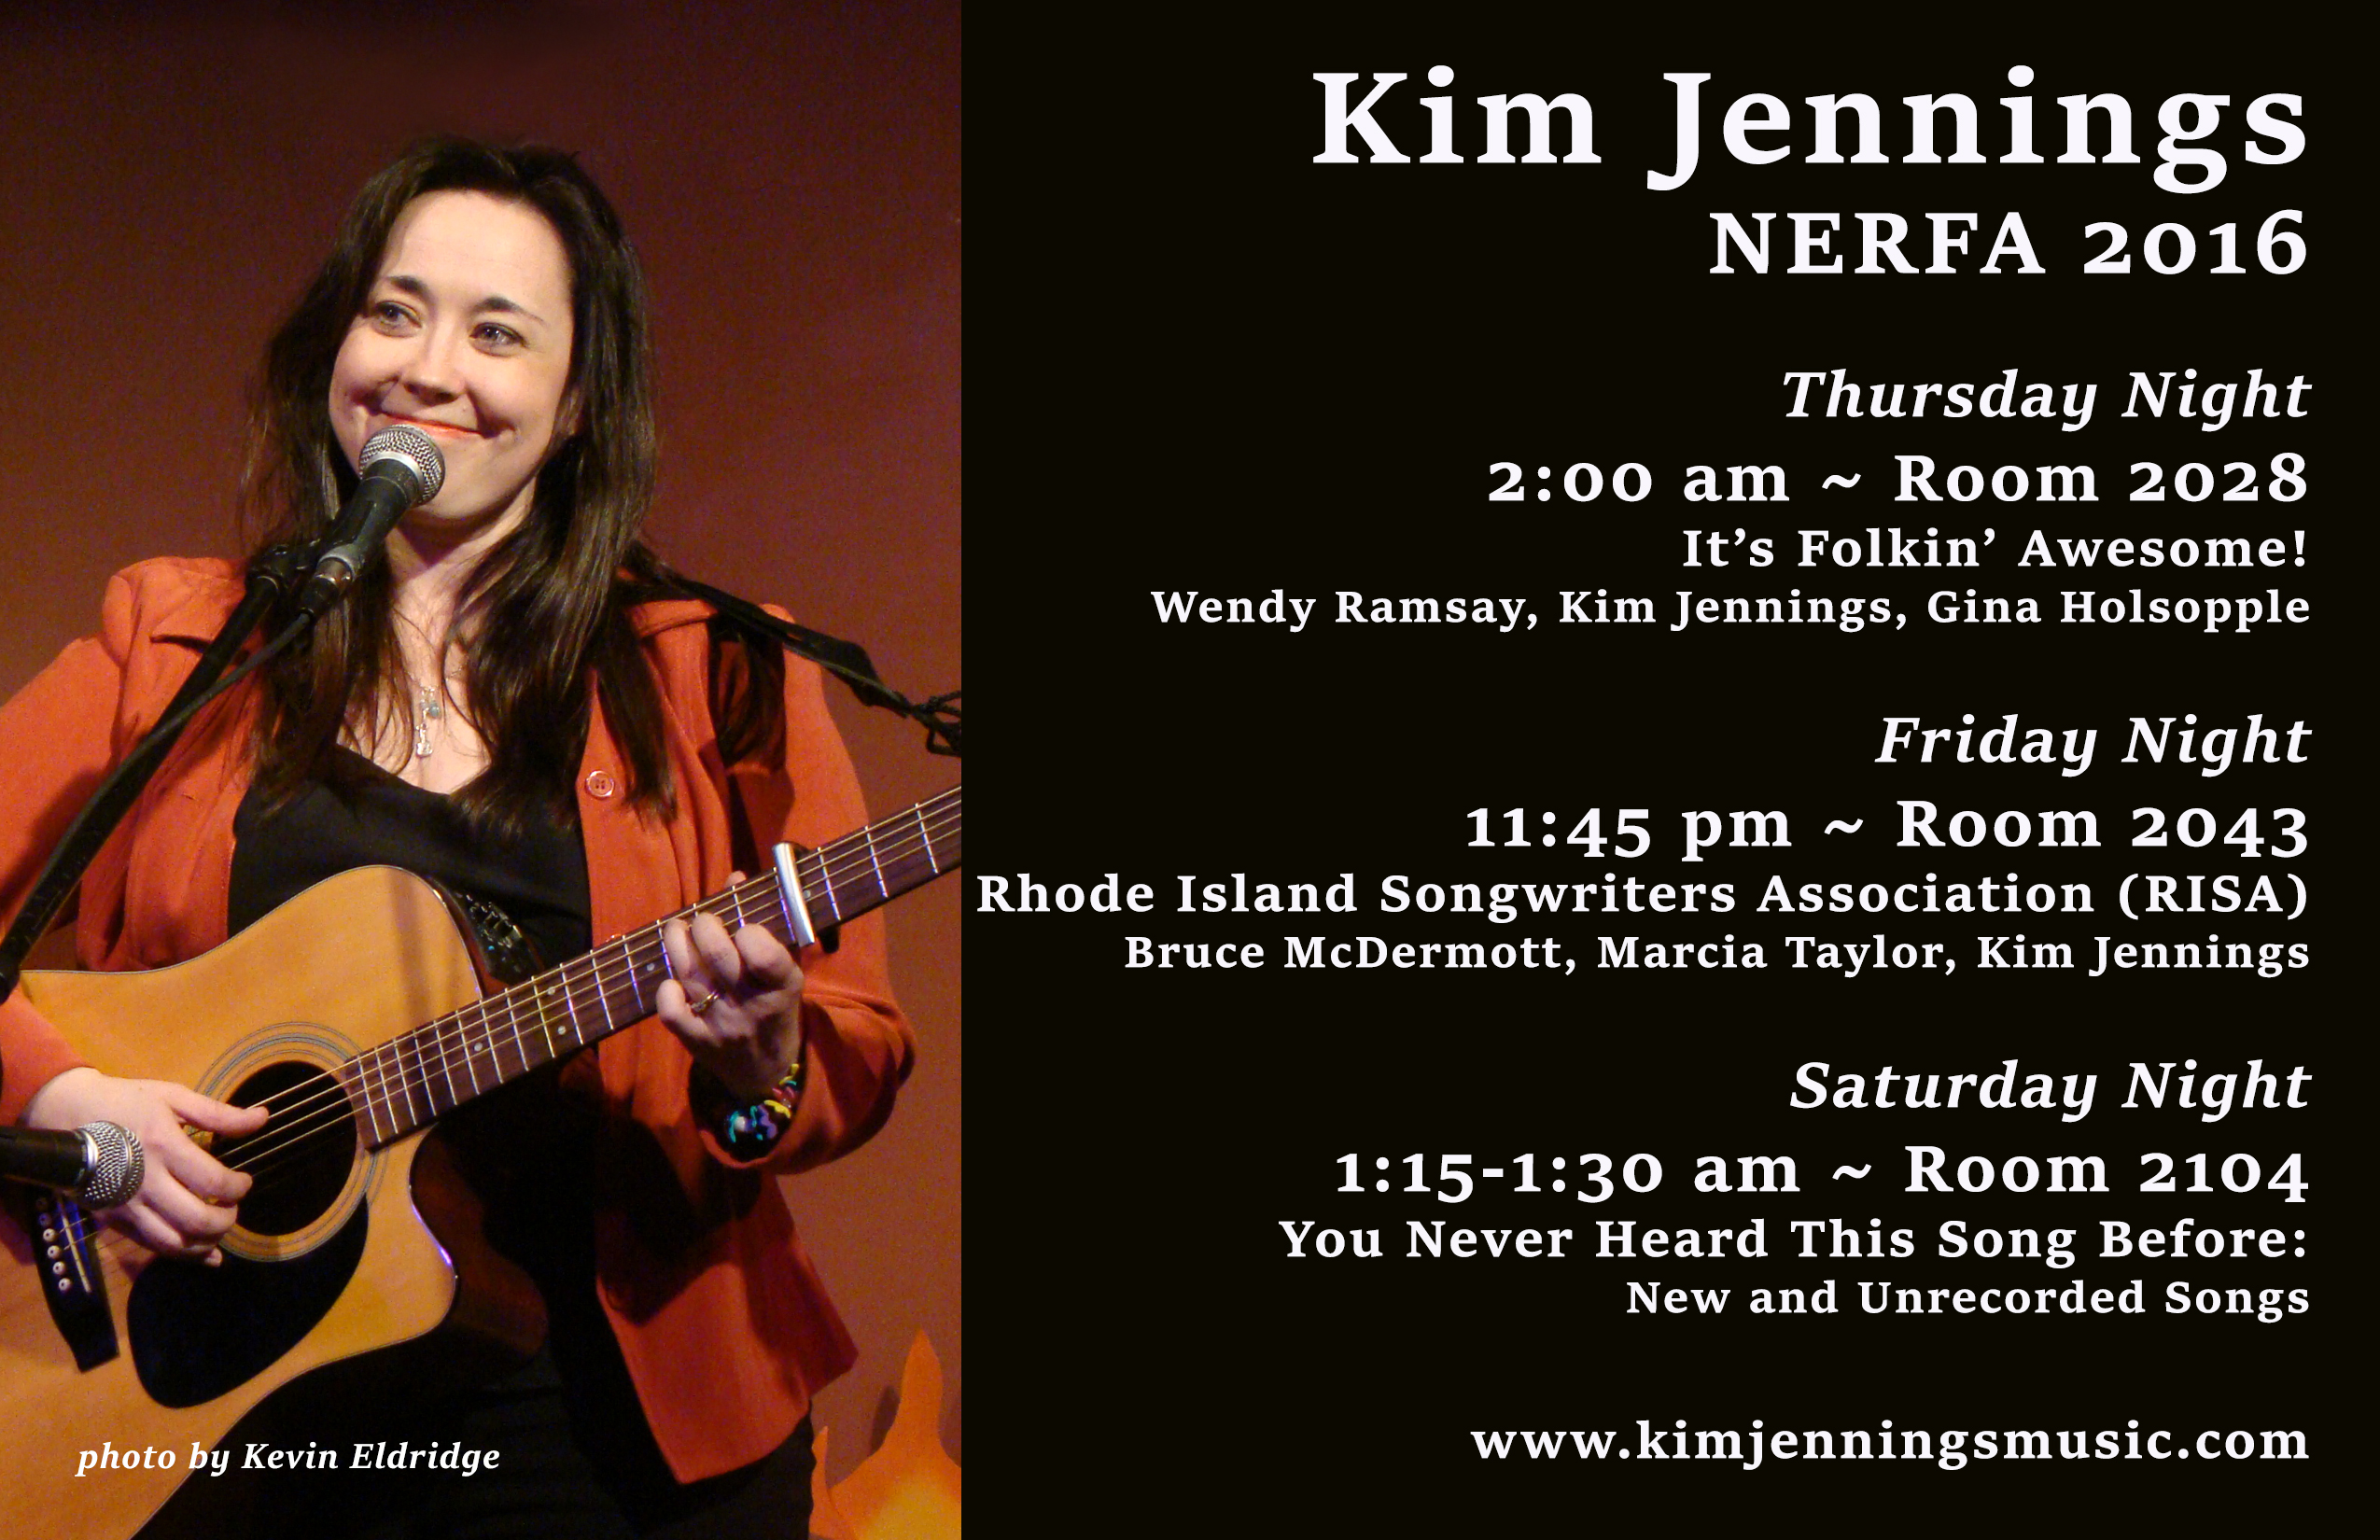 Kim Jennings NERFA 2016 Late Night Schedule